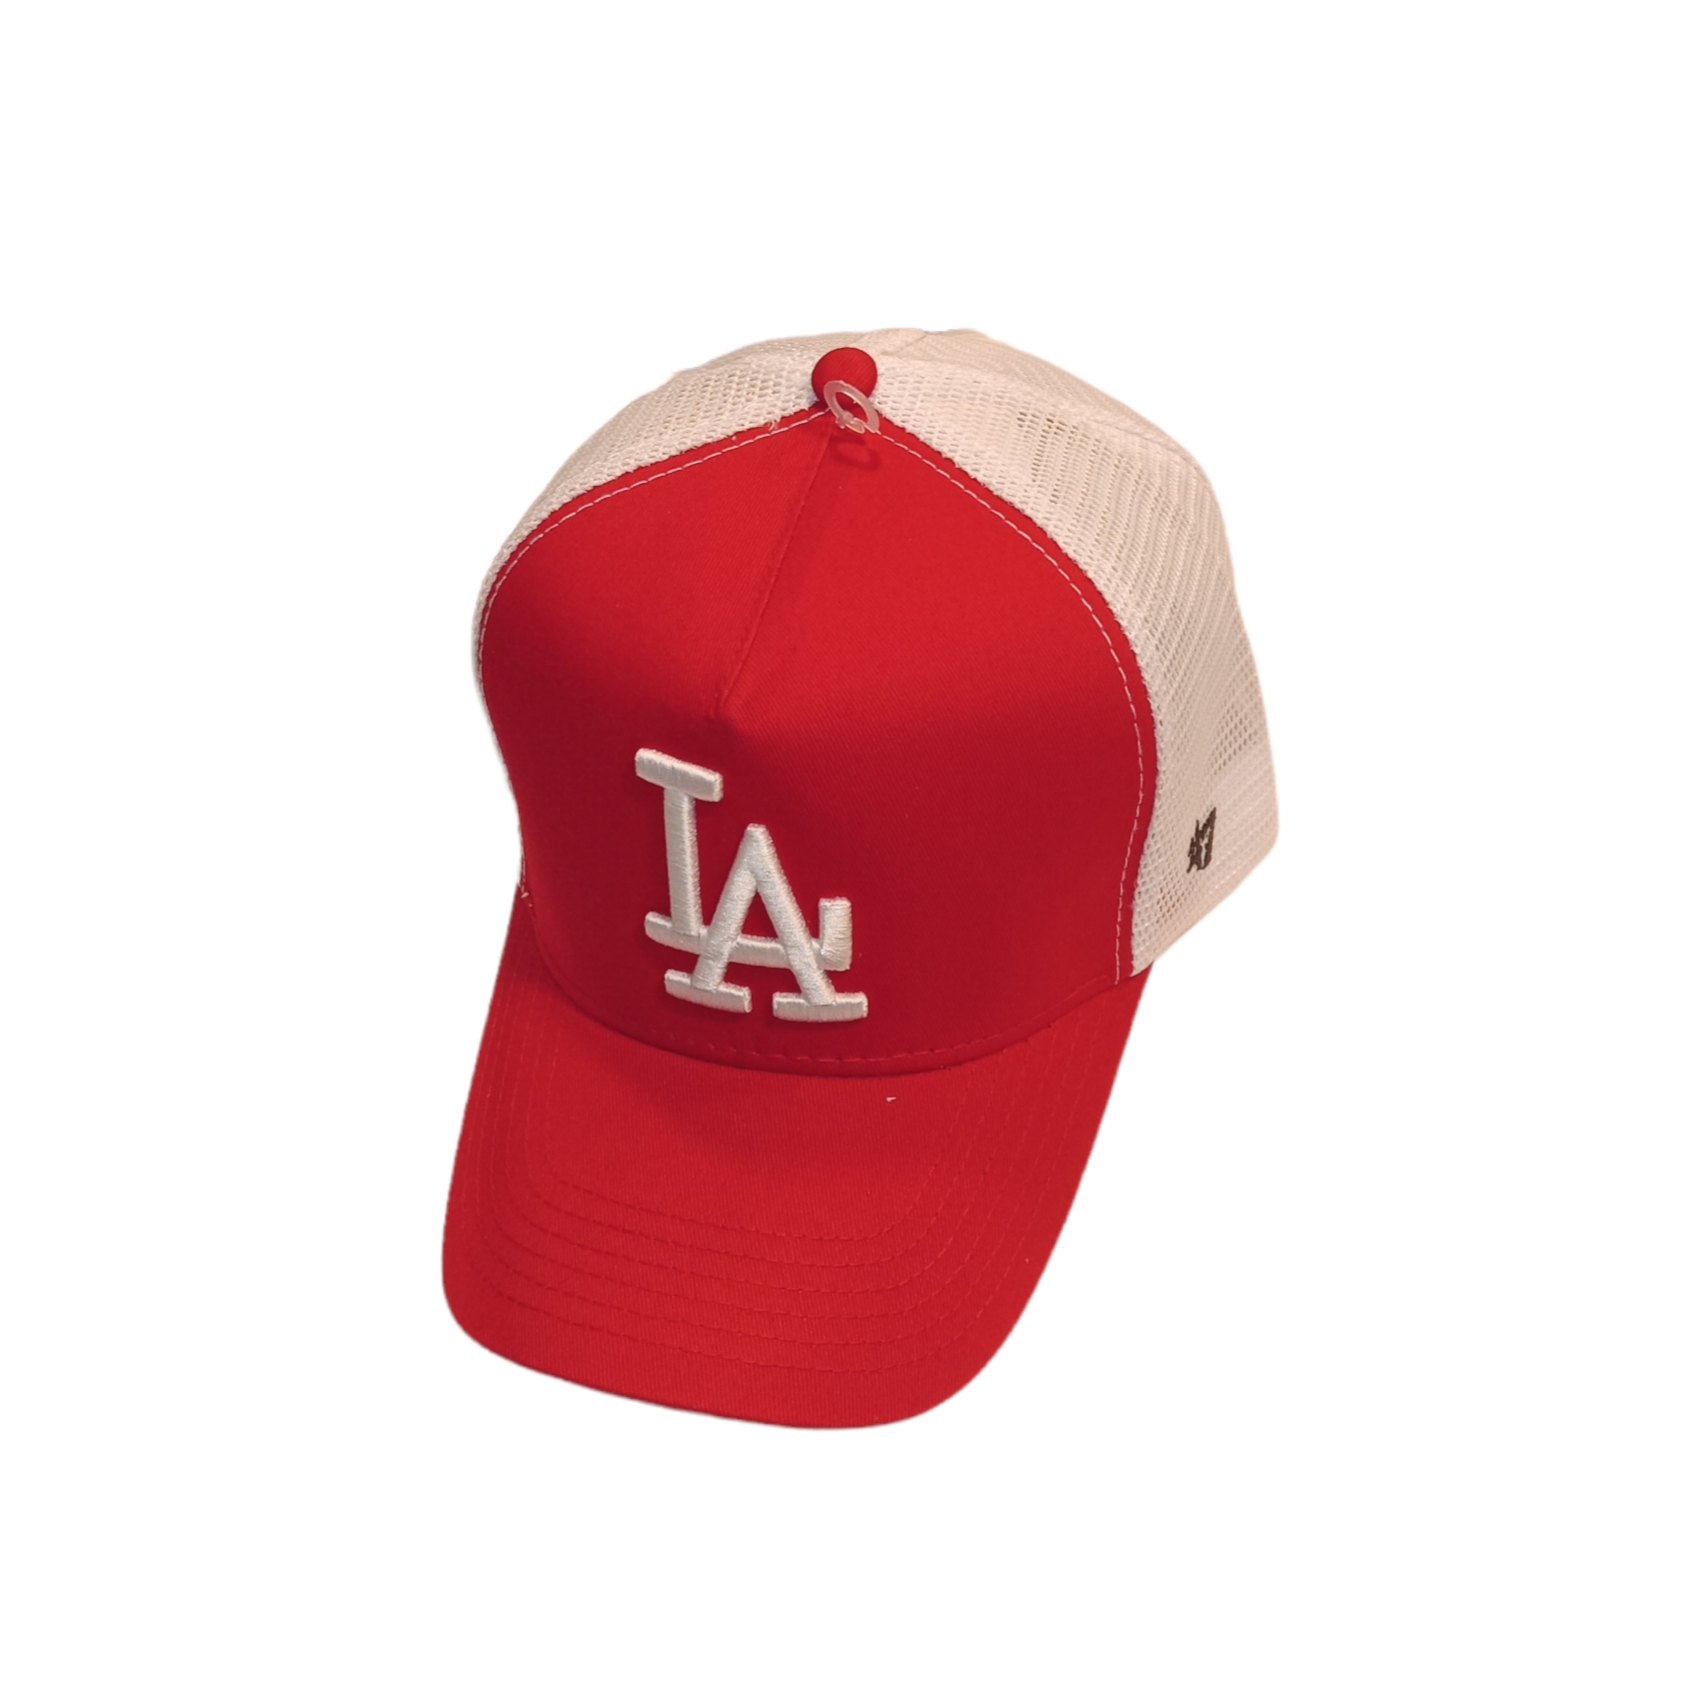 نکته خرید - قیمت روز کلاه کپ مدل LA کد 673 خرید